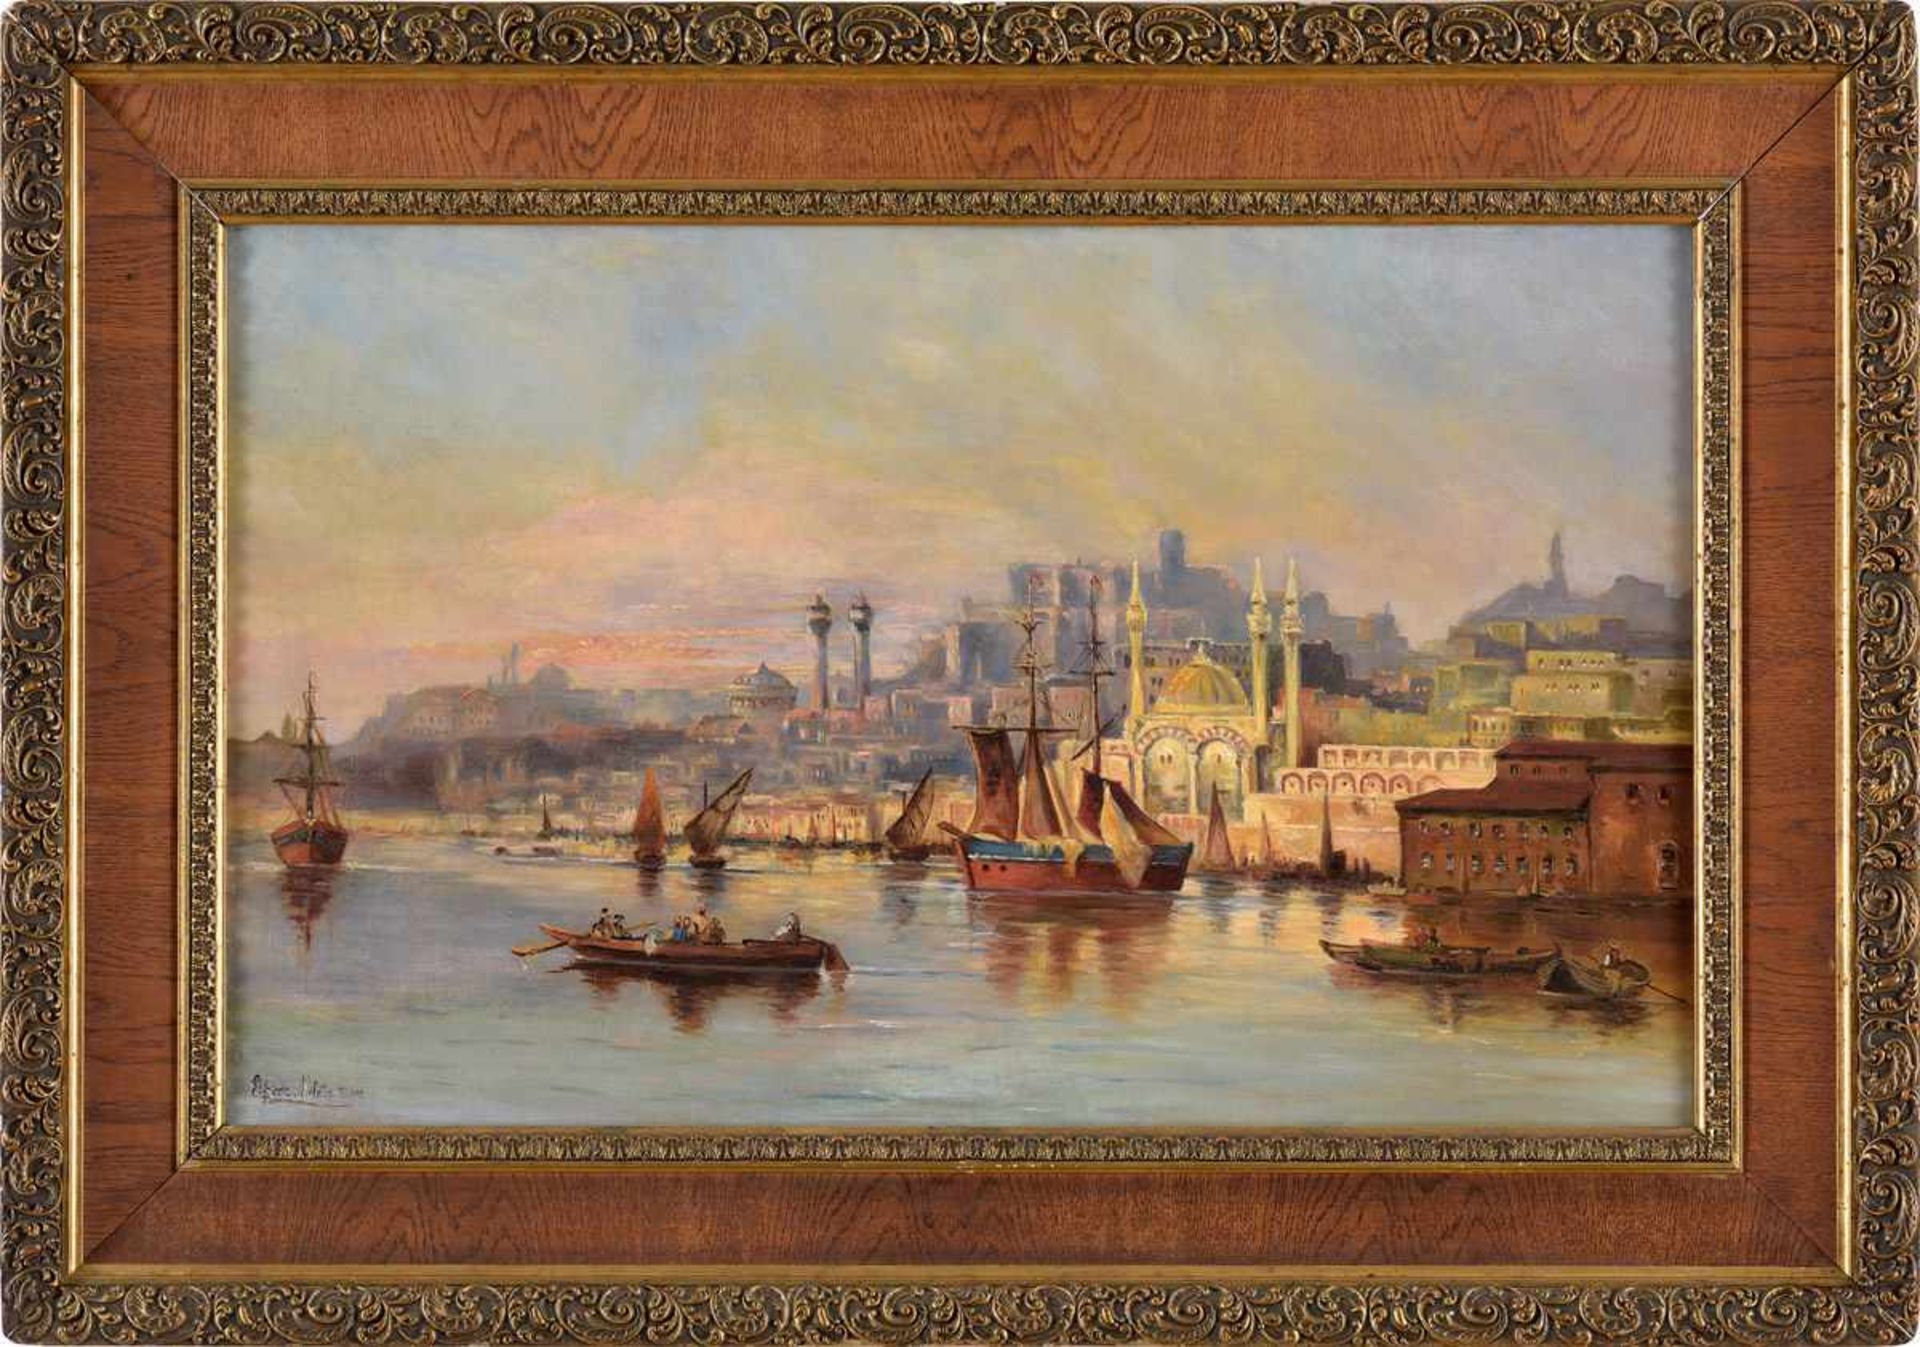 Undeutlich signiert Datiert 1895Ansicht von Istanbul.Öl/Lwd., 50 x 80 cm. - Image 2 of 2